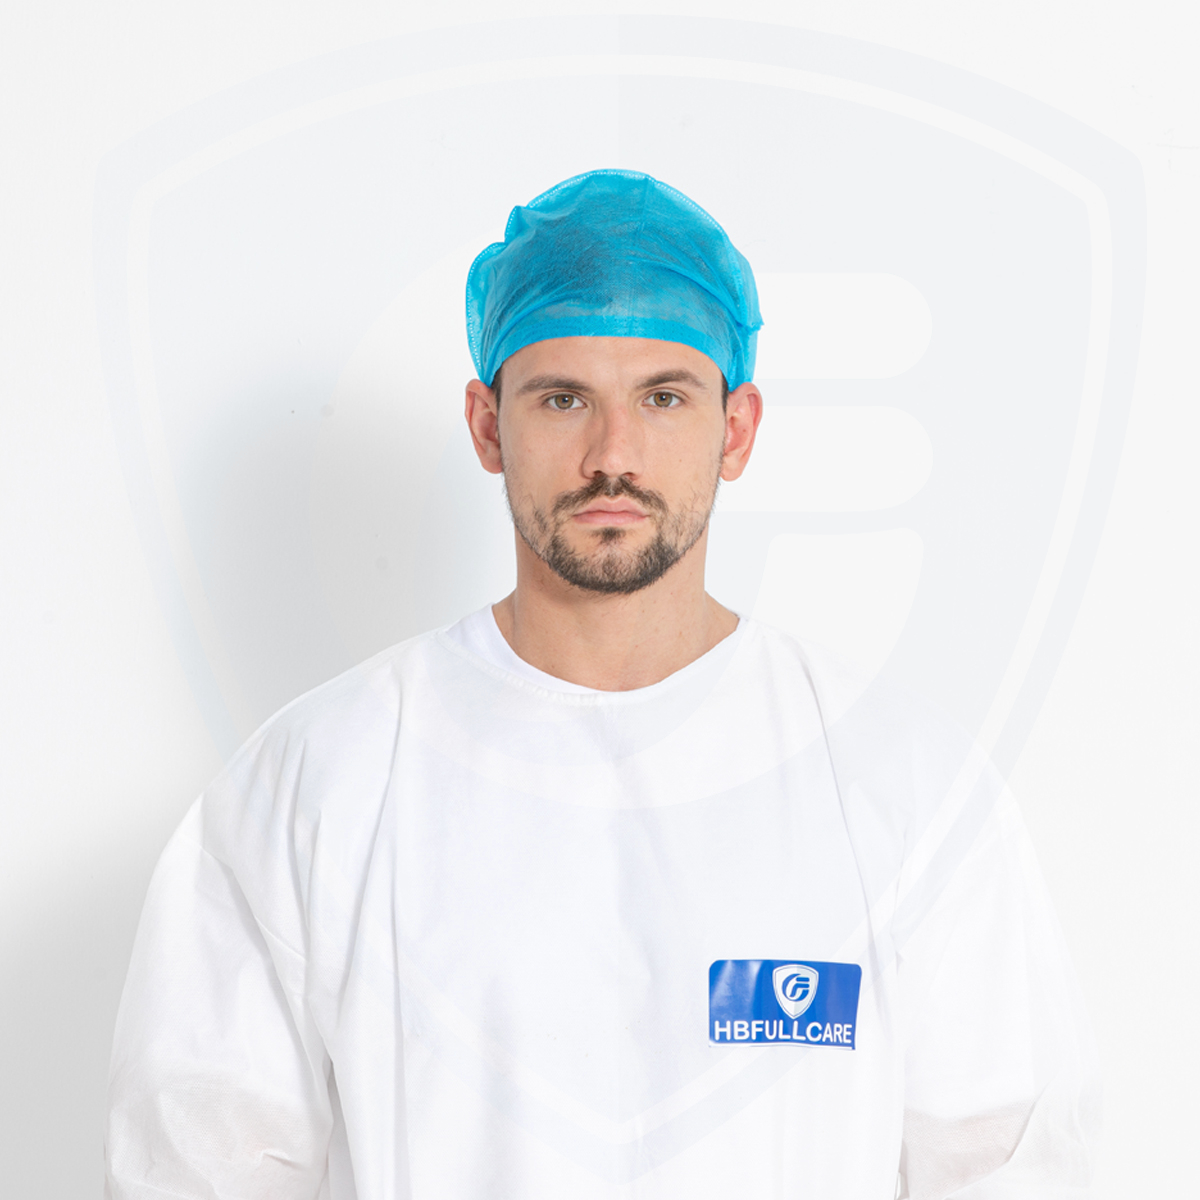 Doctor Cap disponible vendedor caliente de la conveniencia cómoda para quirúrgico